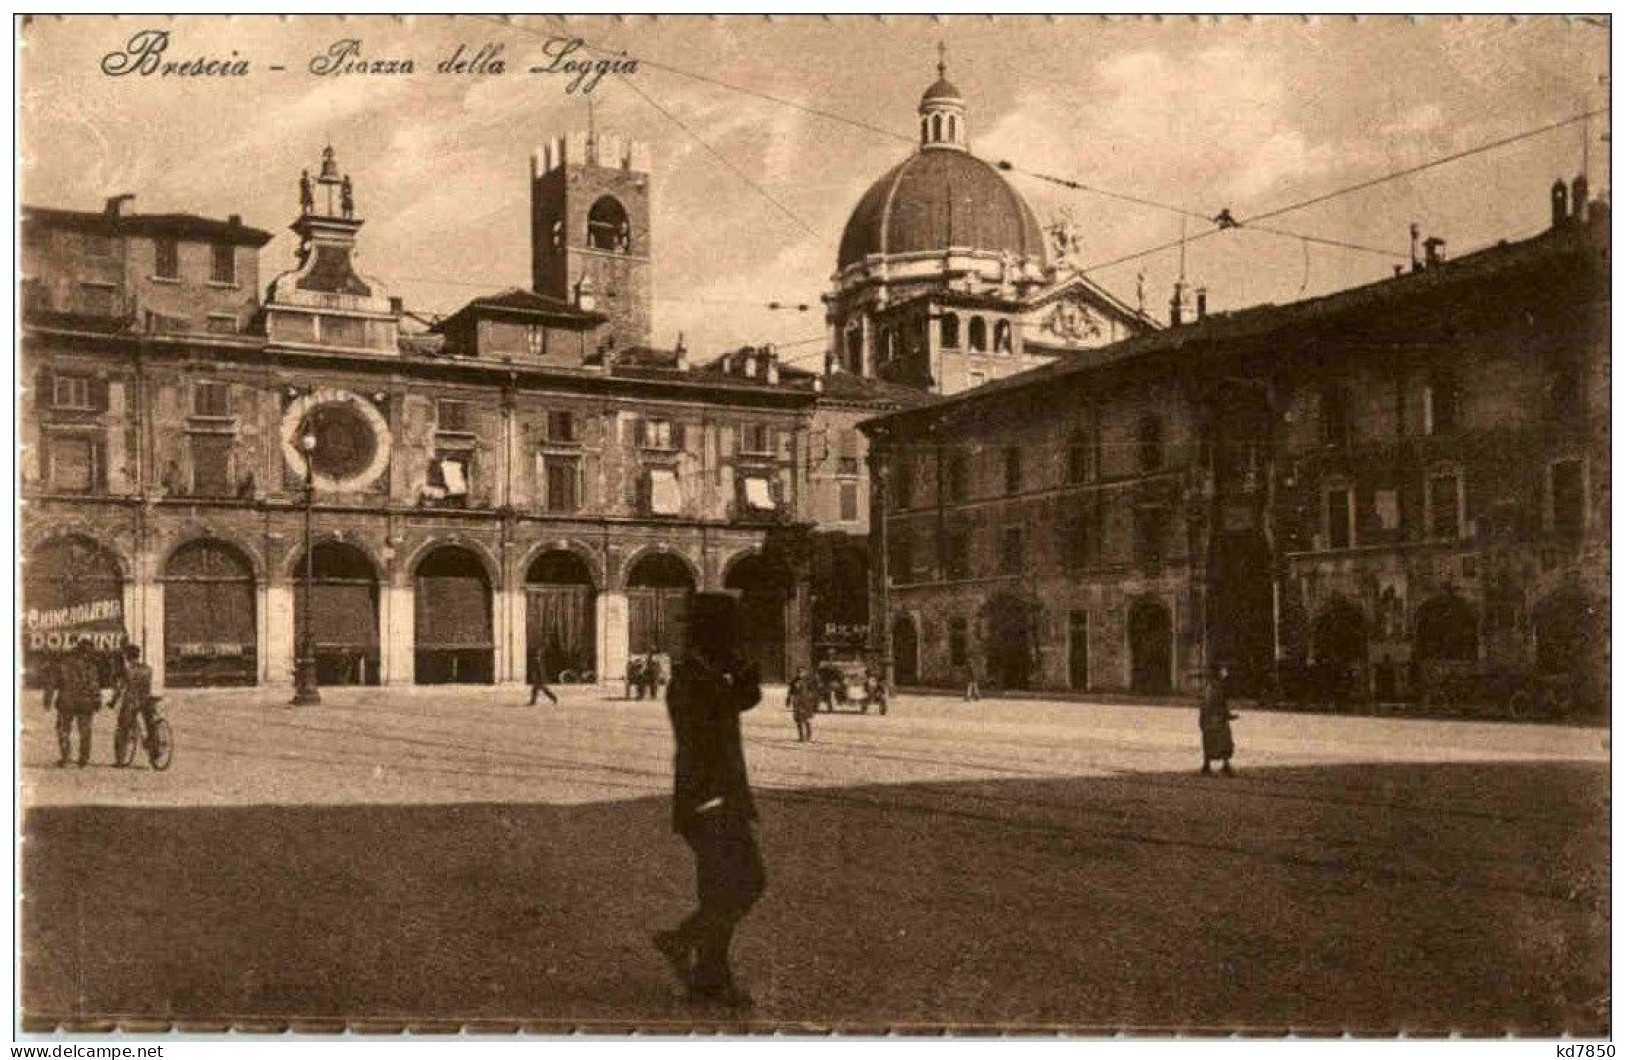 Brescia - Piazza Della Loggia - Brescia